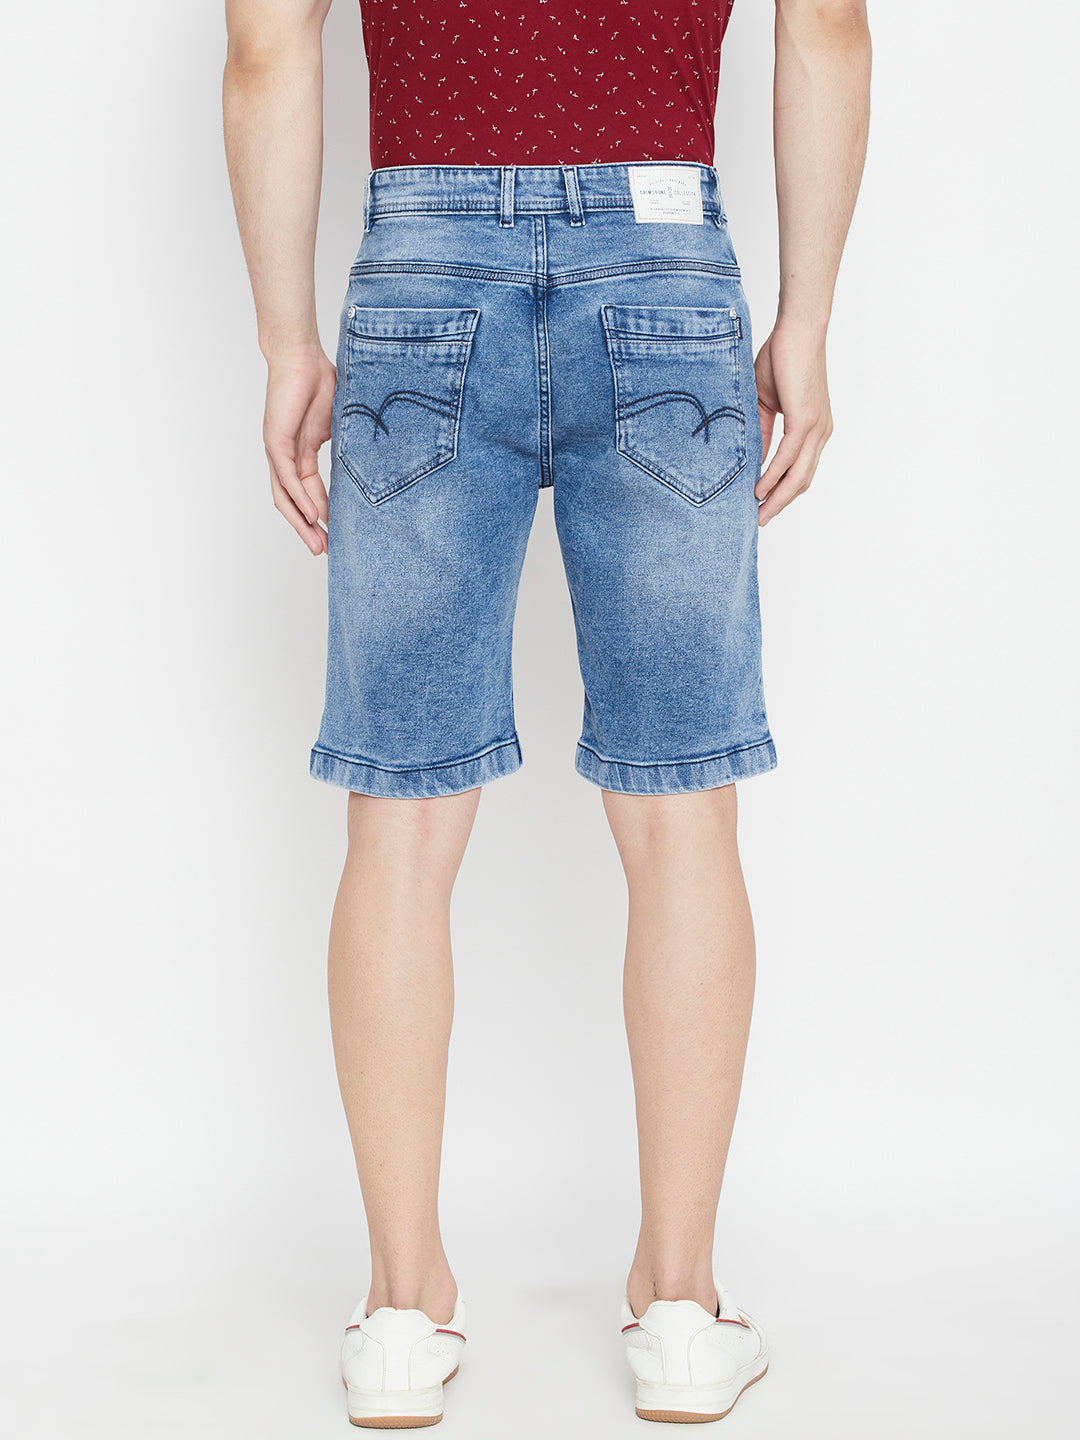 Blue Slim Fit Denim Shorts - Men Shorts